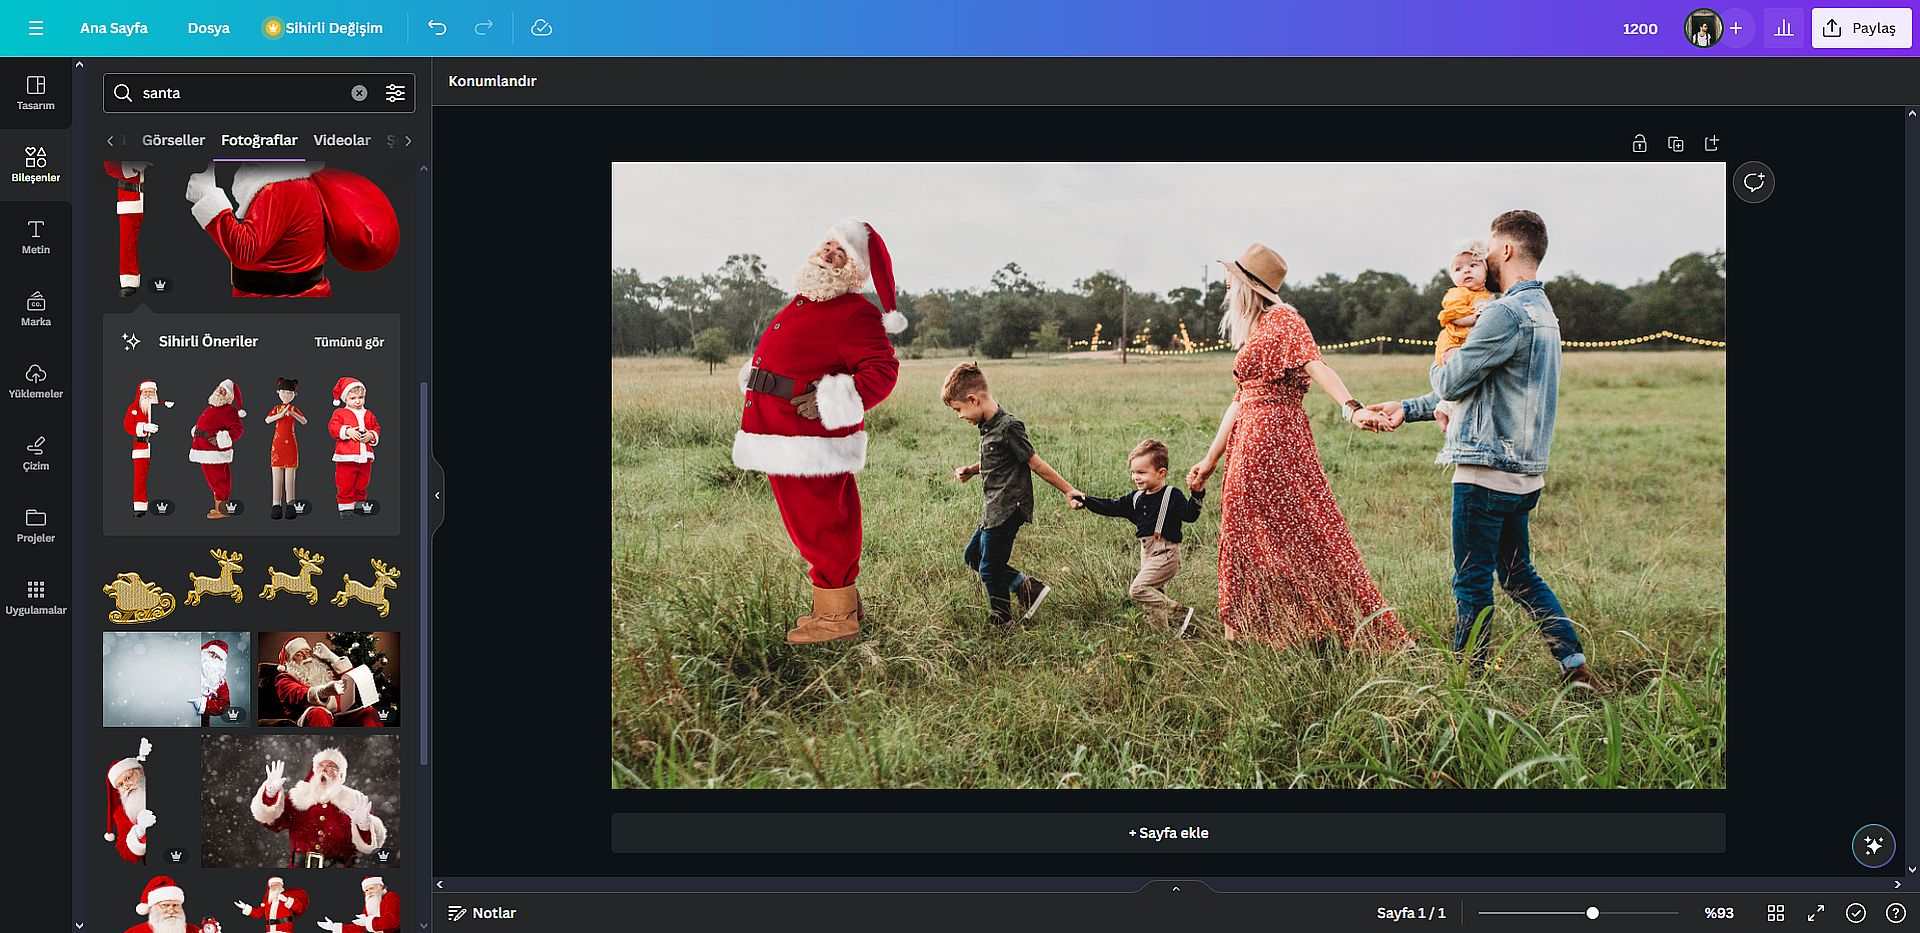 Trình tạo ảnh Giáng sinh AI tốt nhất: Nâng cấp ảnh kỳ nghỉ của bạn bằng nghệ thuật AI với DALL-E, Midjourney, Photoshop AI, v.v.